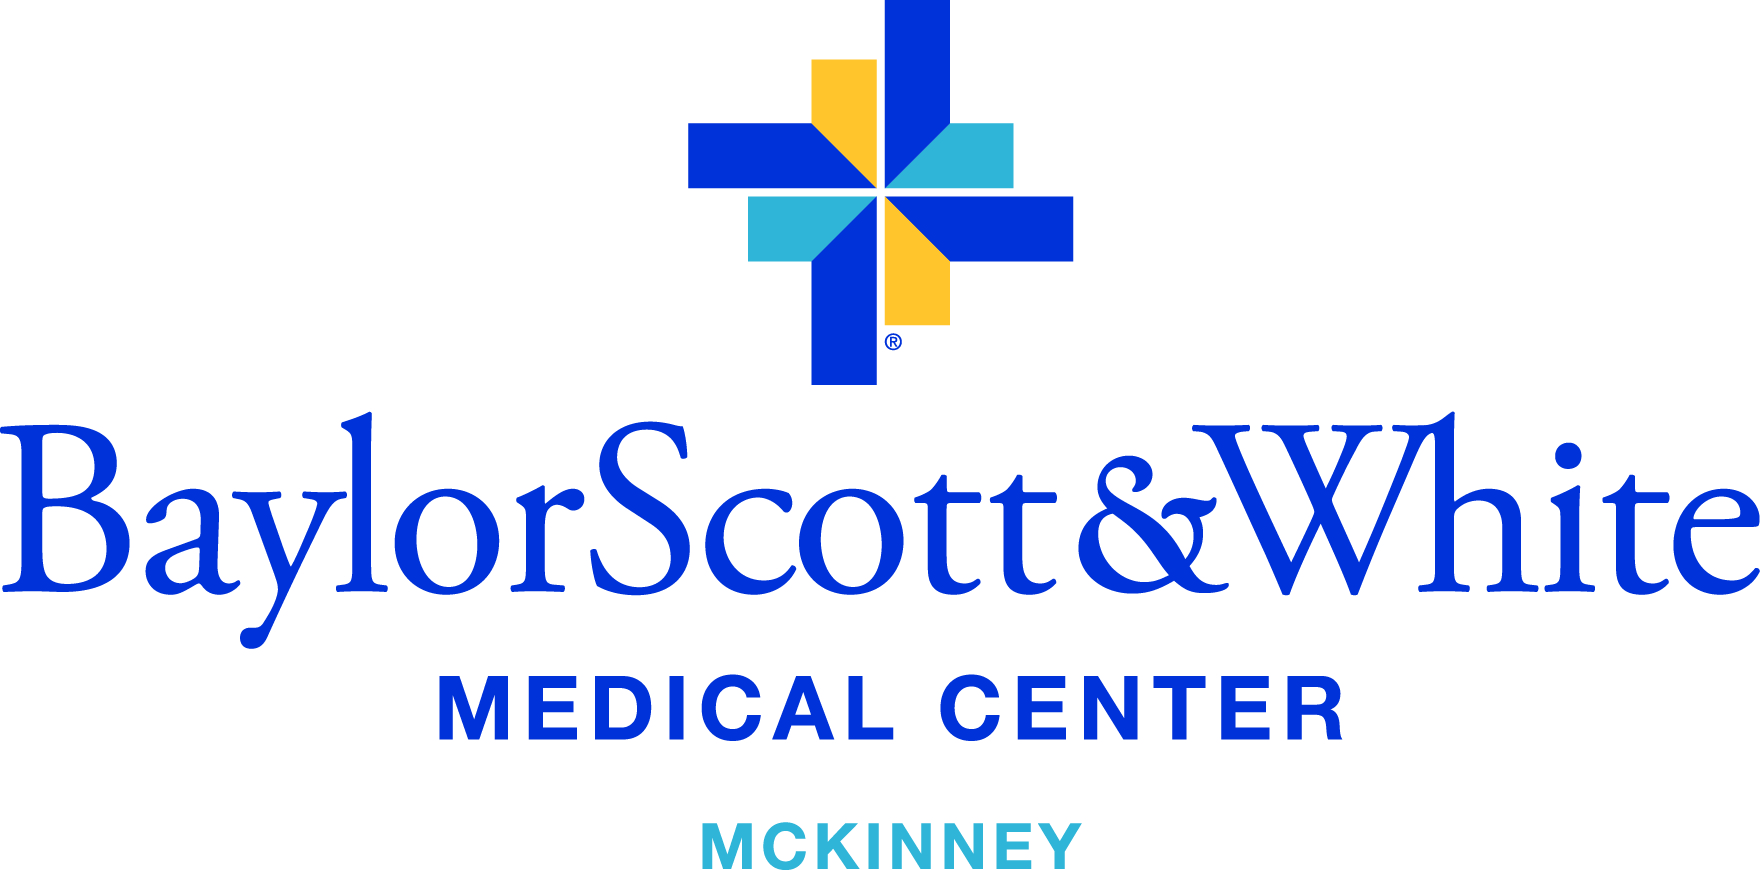 Neurology Opportunity in McKinney - Baylor Scott & White Medical Center - McKinney